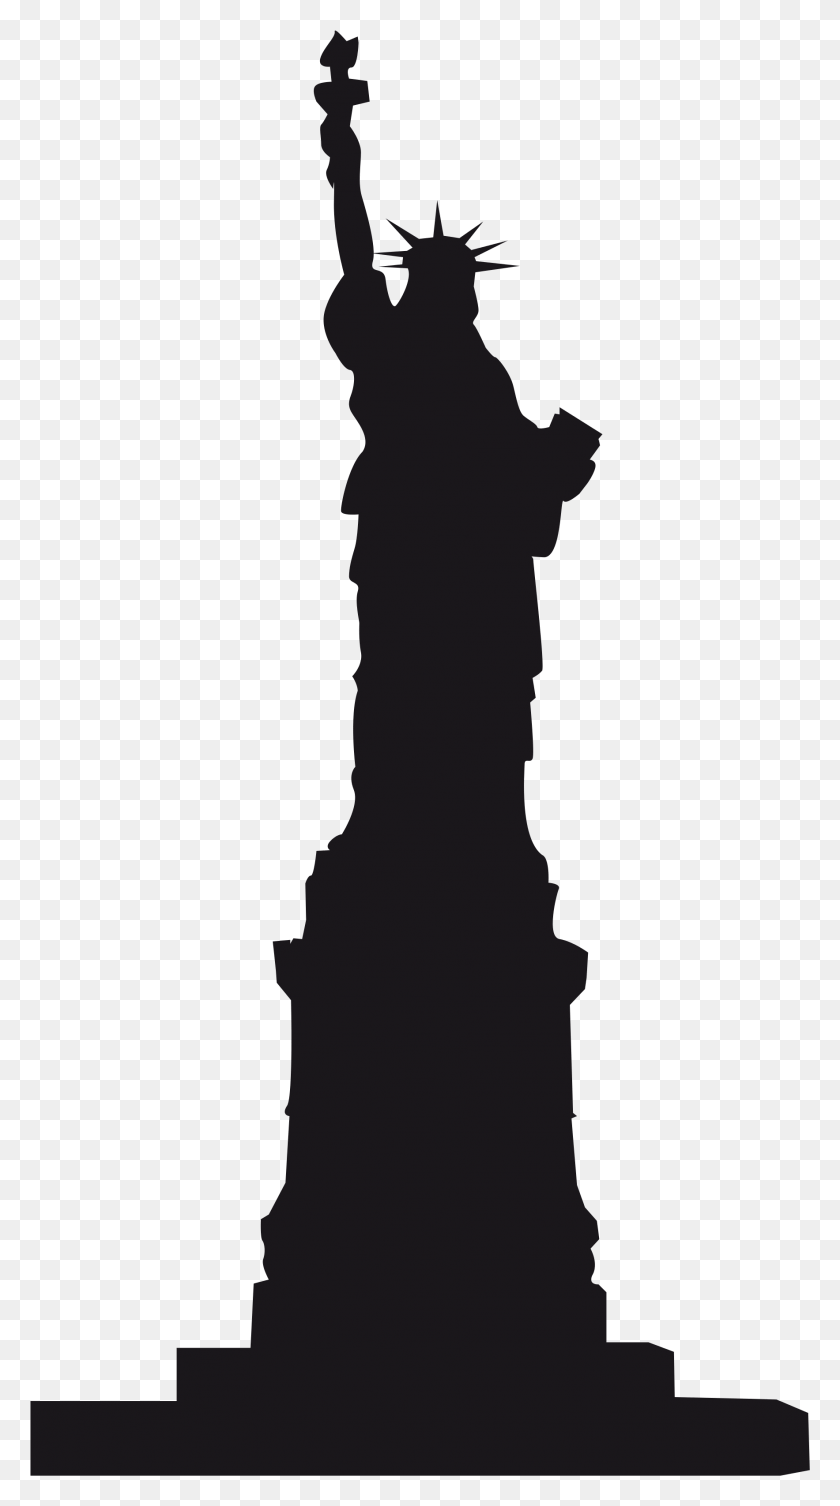 1767x3278 Статуя Свободы Памятник Ориентир Статуя Свободы, Символ, Человек Hd Png Скачать